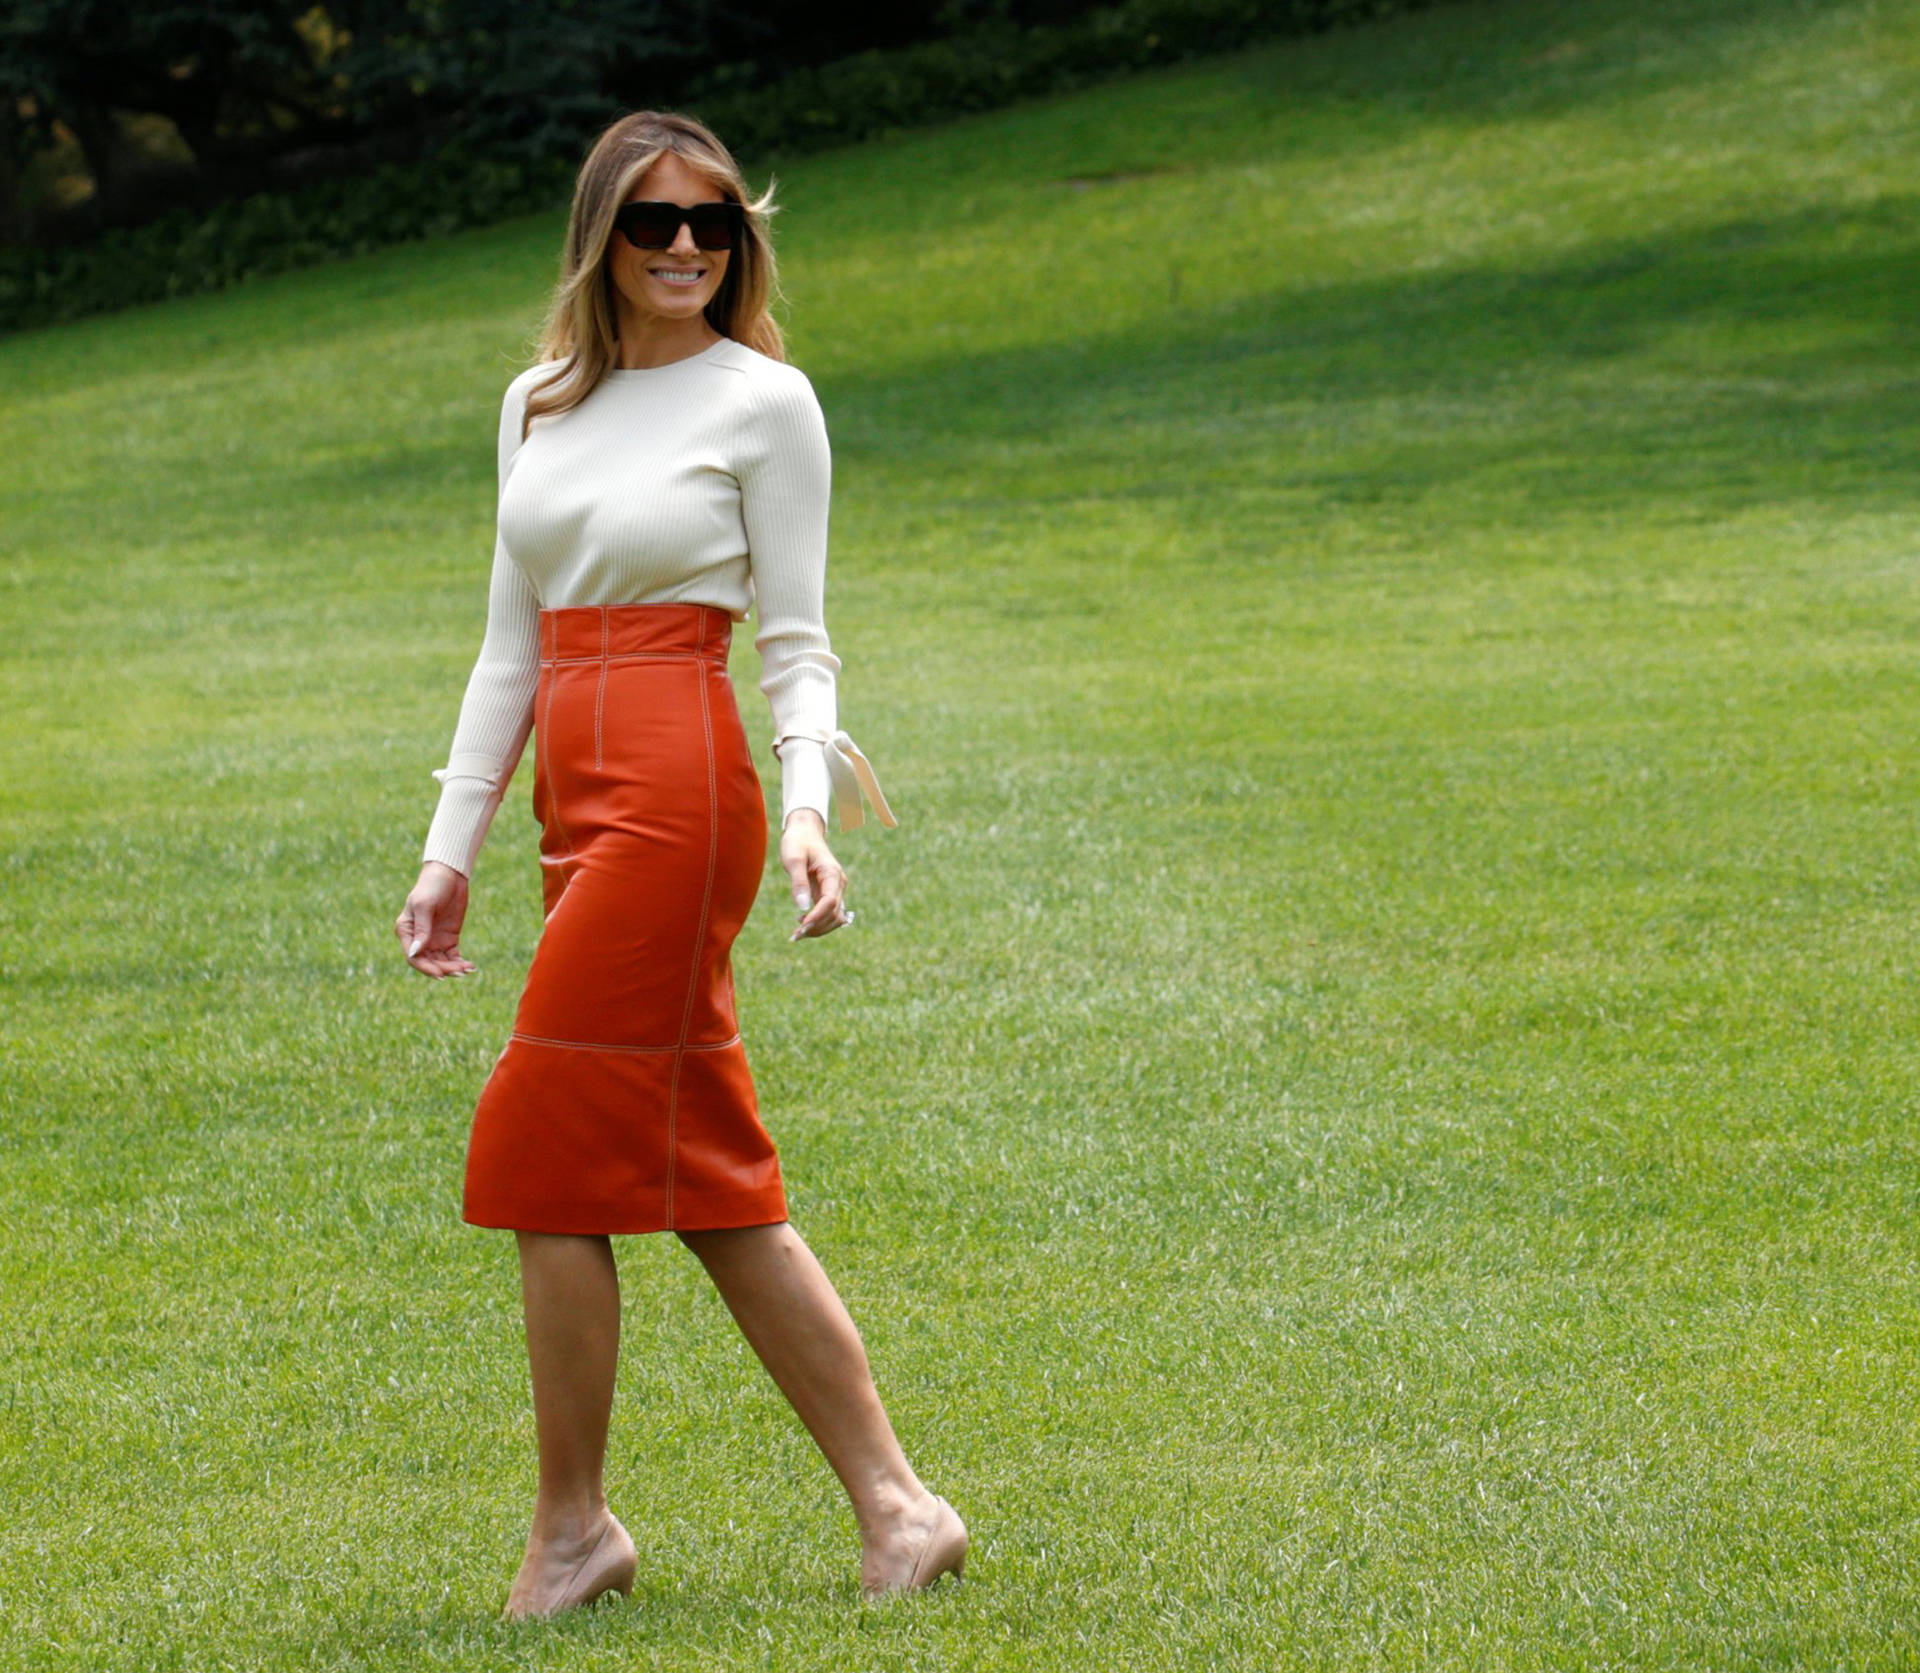 Melania Trump In Orange Skirt Wallpaper